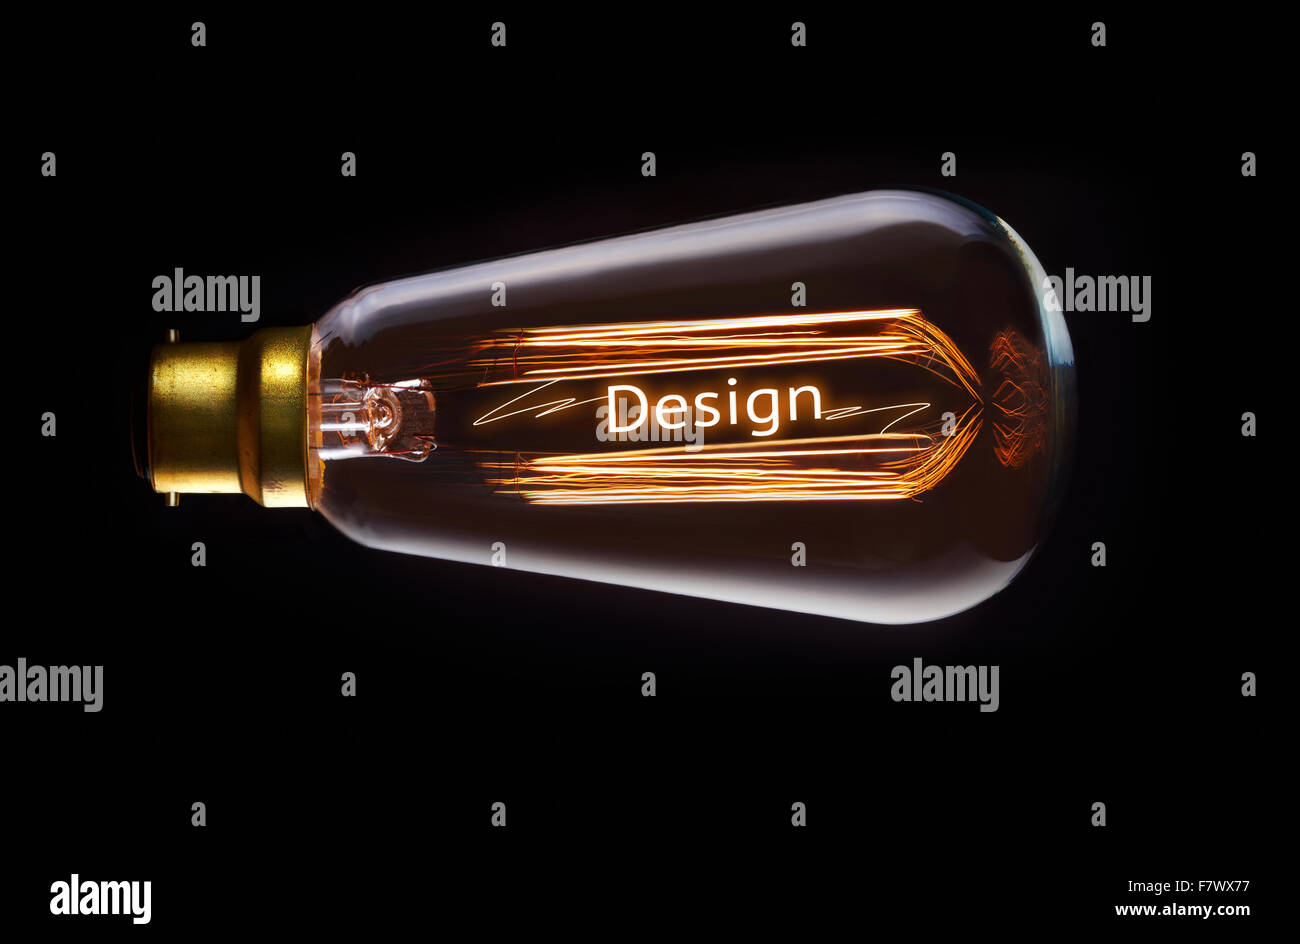 Design concept in a filament lightbulb. Stock Photo